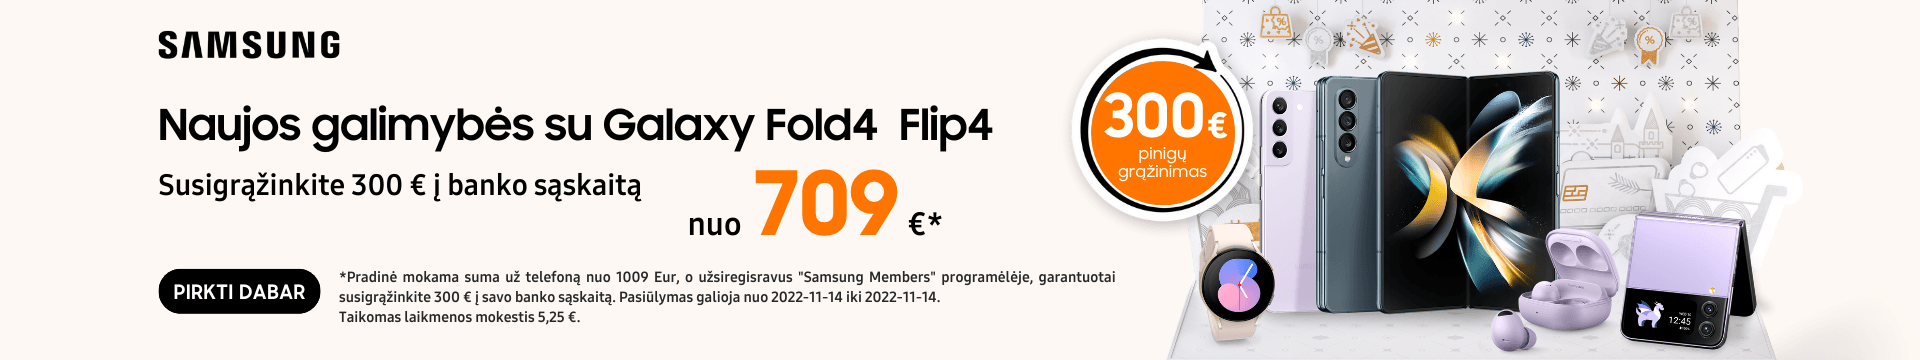 Samsung Galaxy Fold4 Flip4 akcija